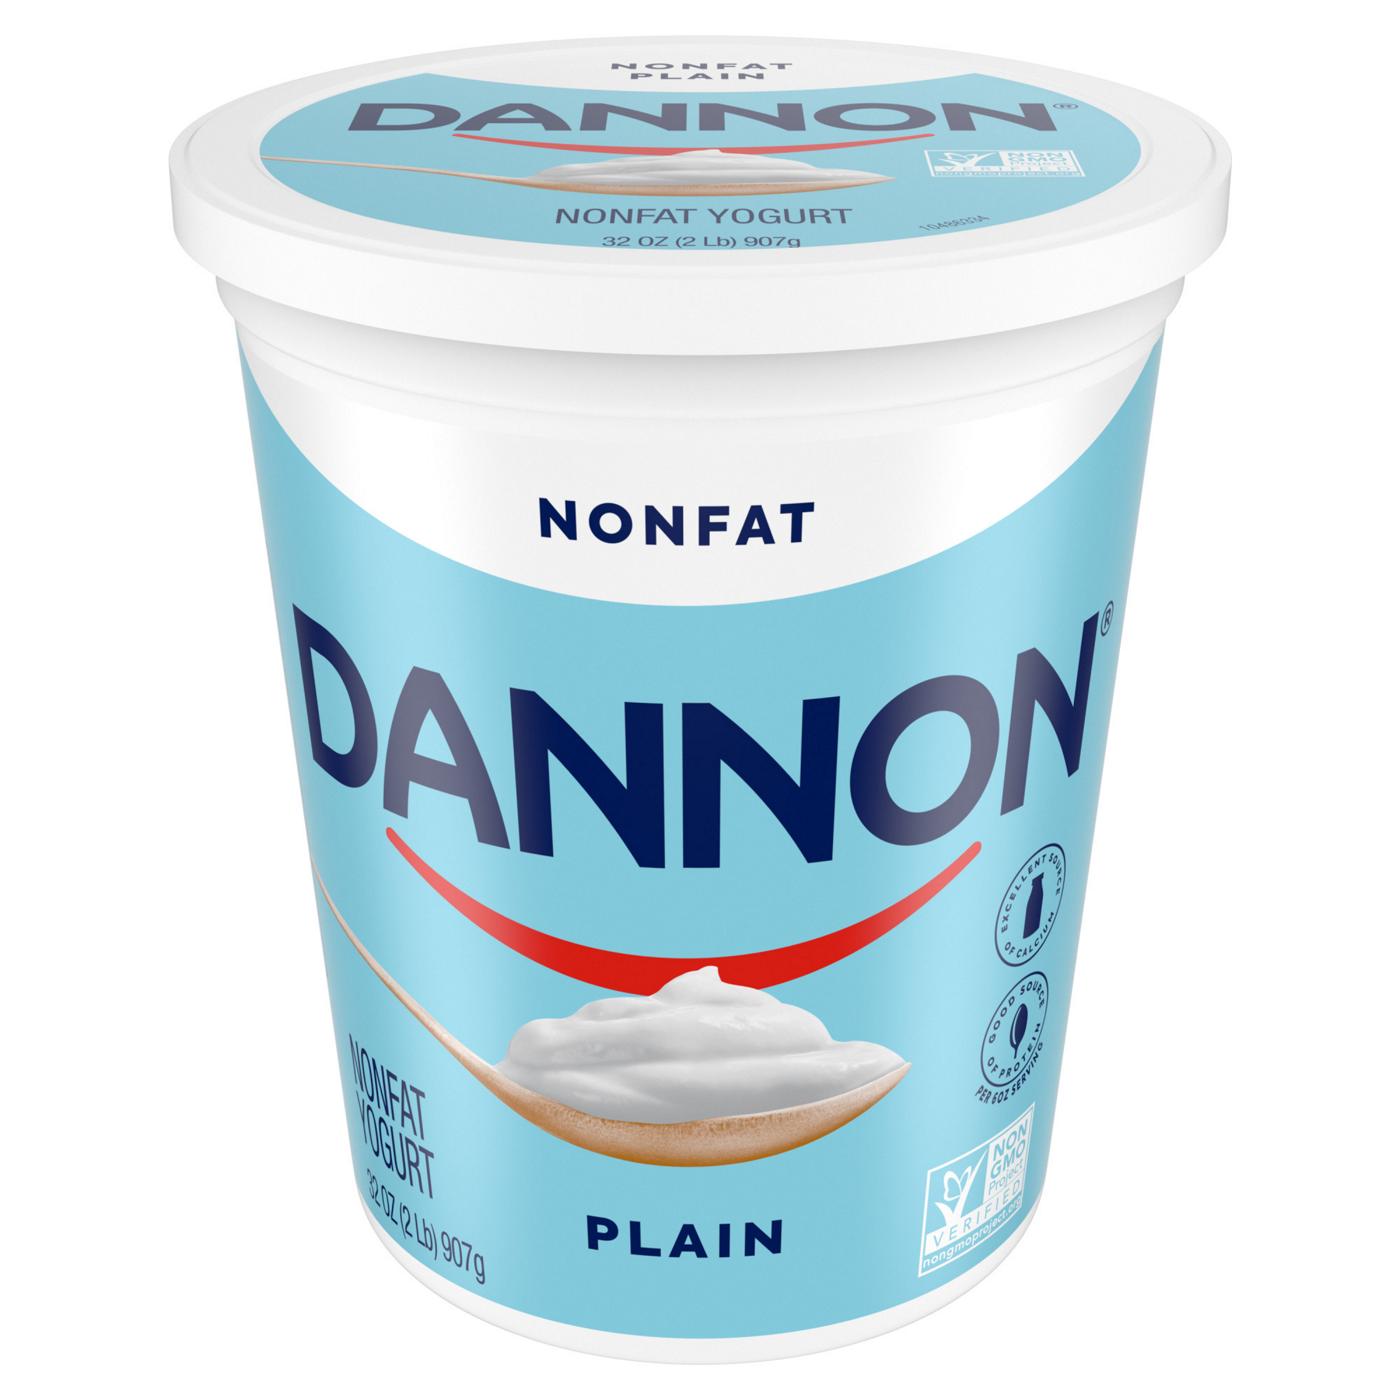 Dannon Plain Nonfat Yogurt; image 8 of 9